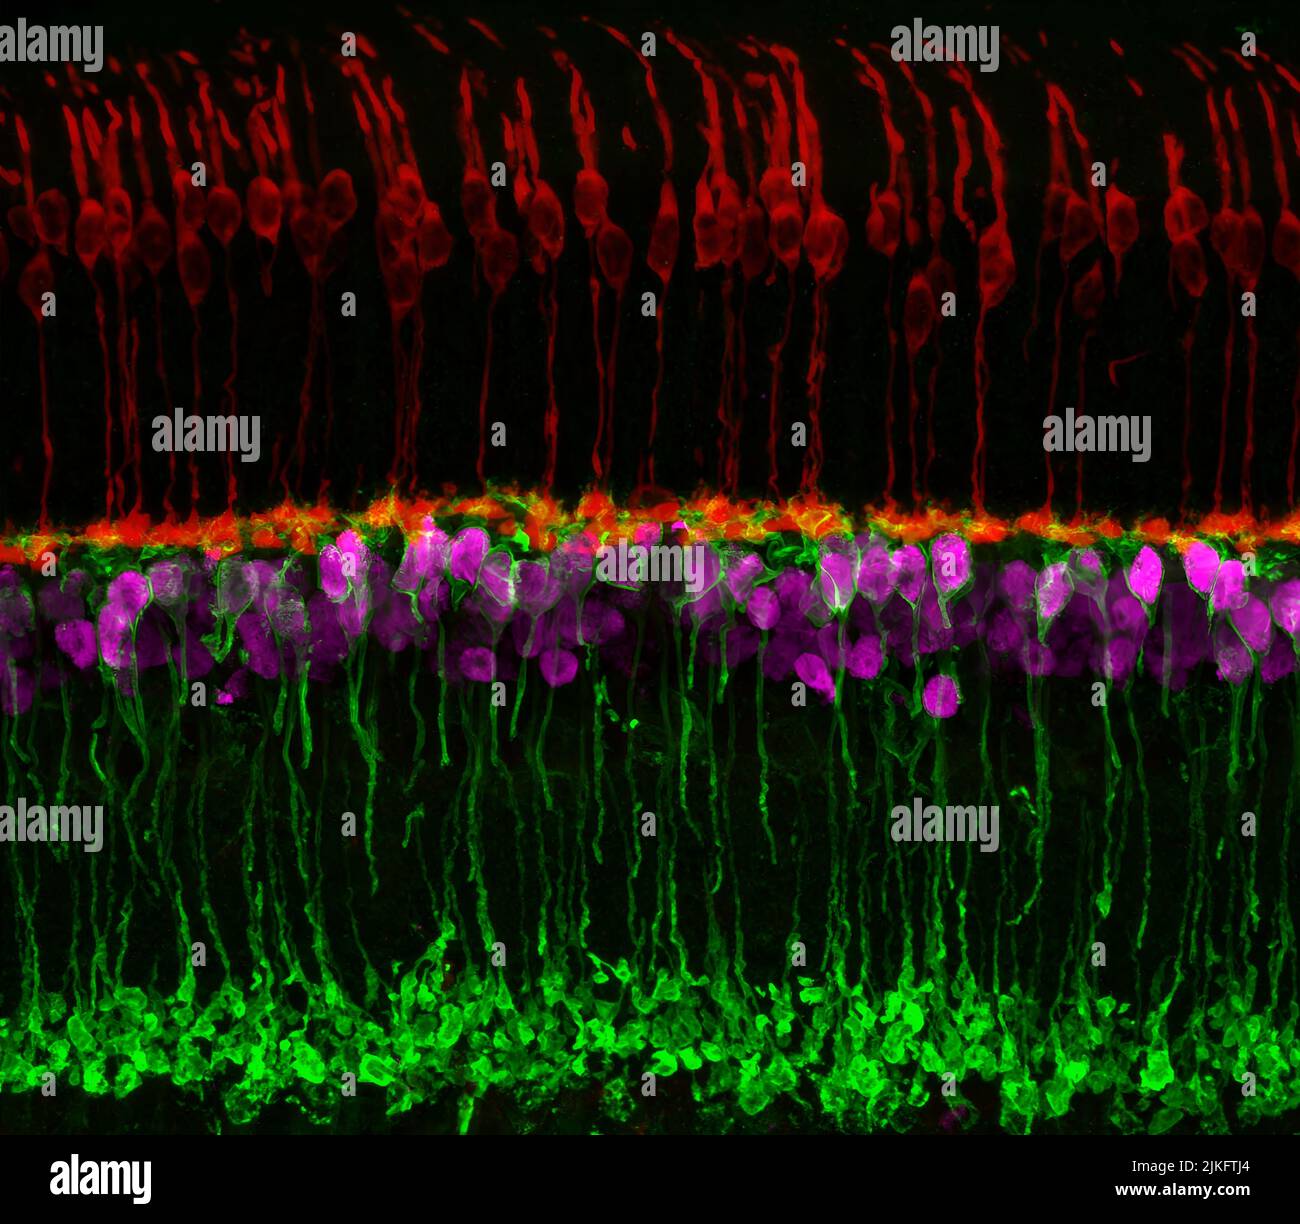 Circuiti neurali nella retina del topo. I fotorecettori a cono (rossi) consentono ai neuroni bipolari a visione a colori (magenta) di trasmettere le informazioni più in basso nel circuito e un sottotipo di neurone bipolare (verde) aiuta i segnali di processo rilevati da altri fotorecettori nel penombra. Foto Stock